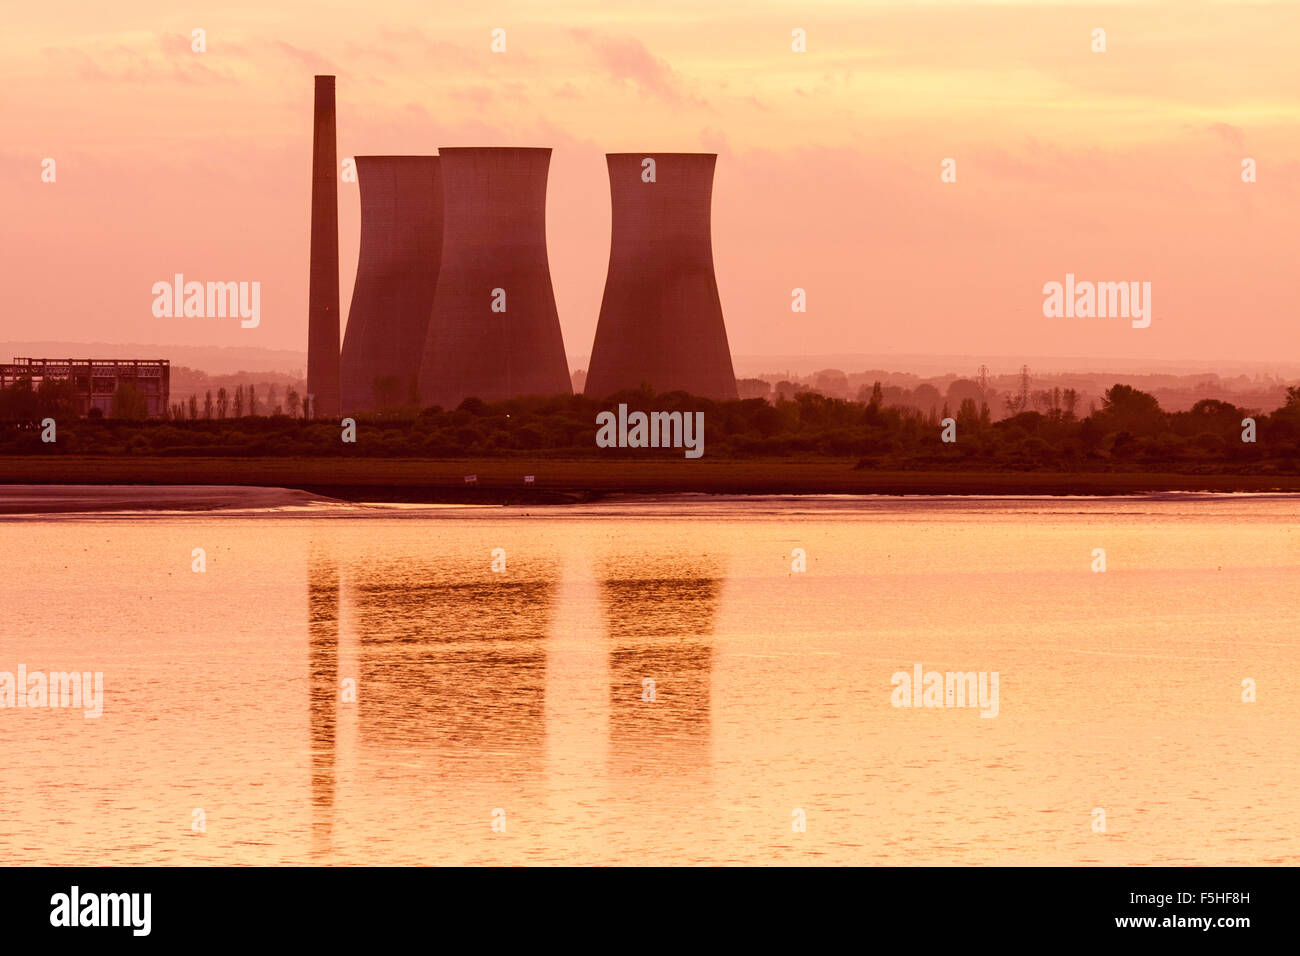 Teleobjetivo Richborough power station con tres torres de refrigeración durante la puesta de sol, sundown, torres de luz reflejada en el mar tranquilo de Pegwell Bay. Foto de stock